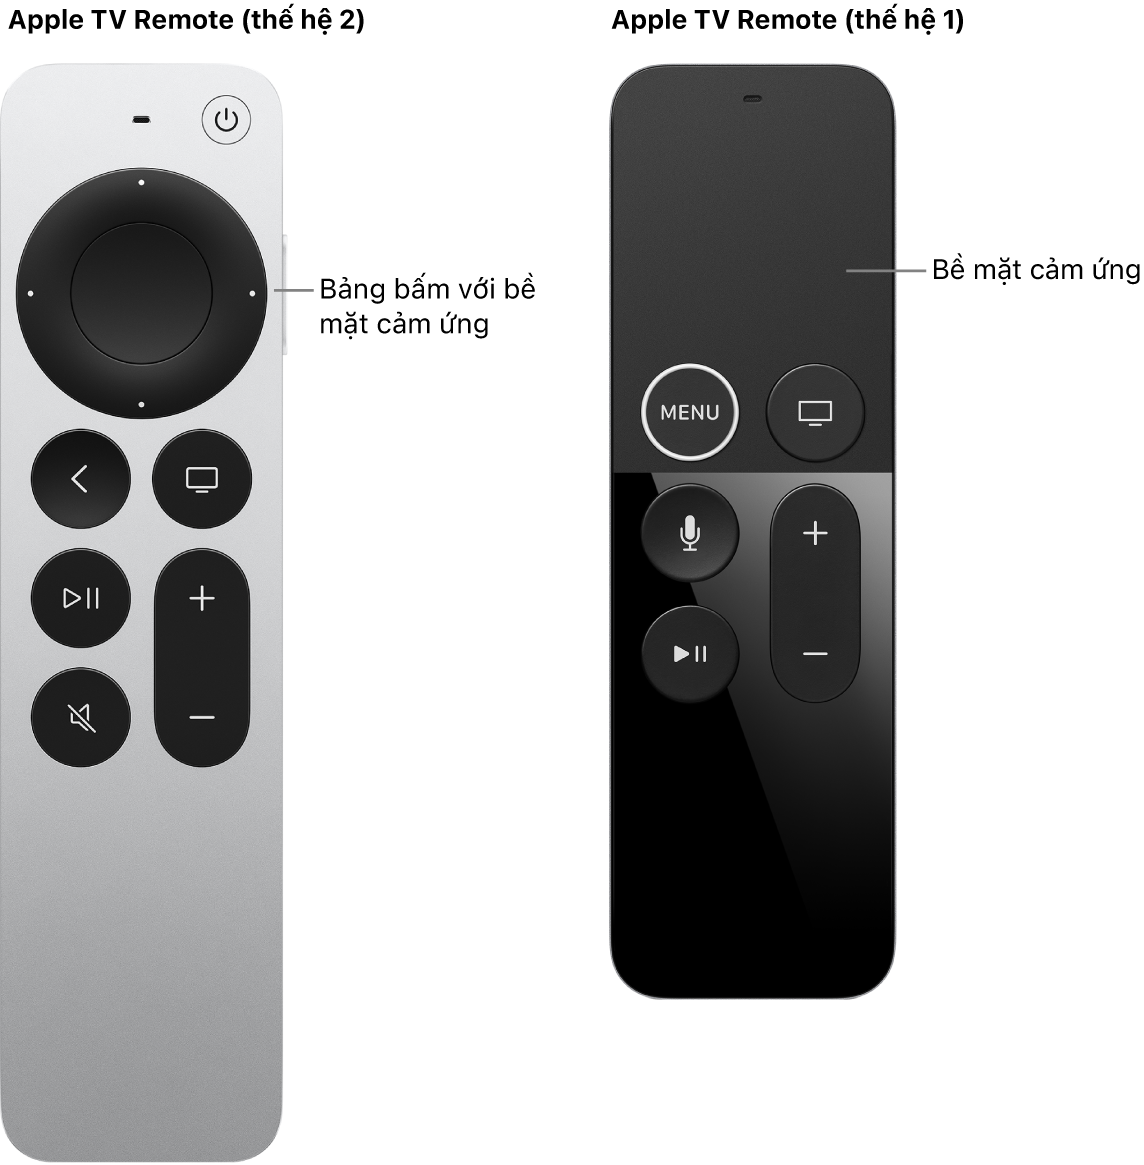 Apple TV Remote (thế hệ 2 và 3) với bảng bấm và Apple TV Remote (thế hệ 1) với bề mặt cảm ứng